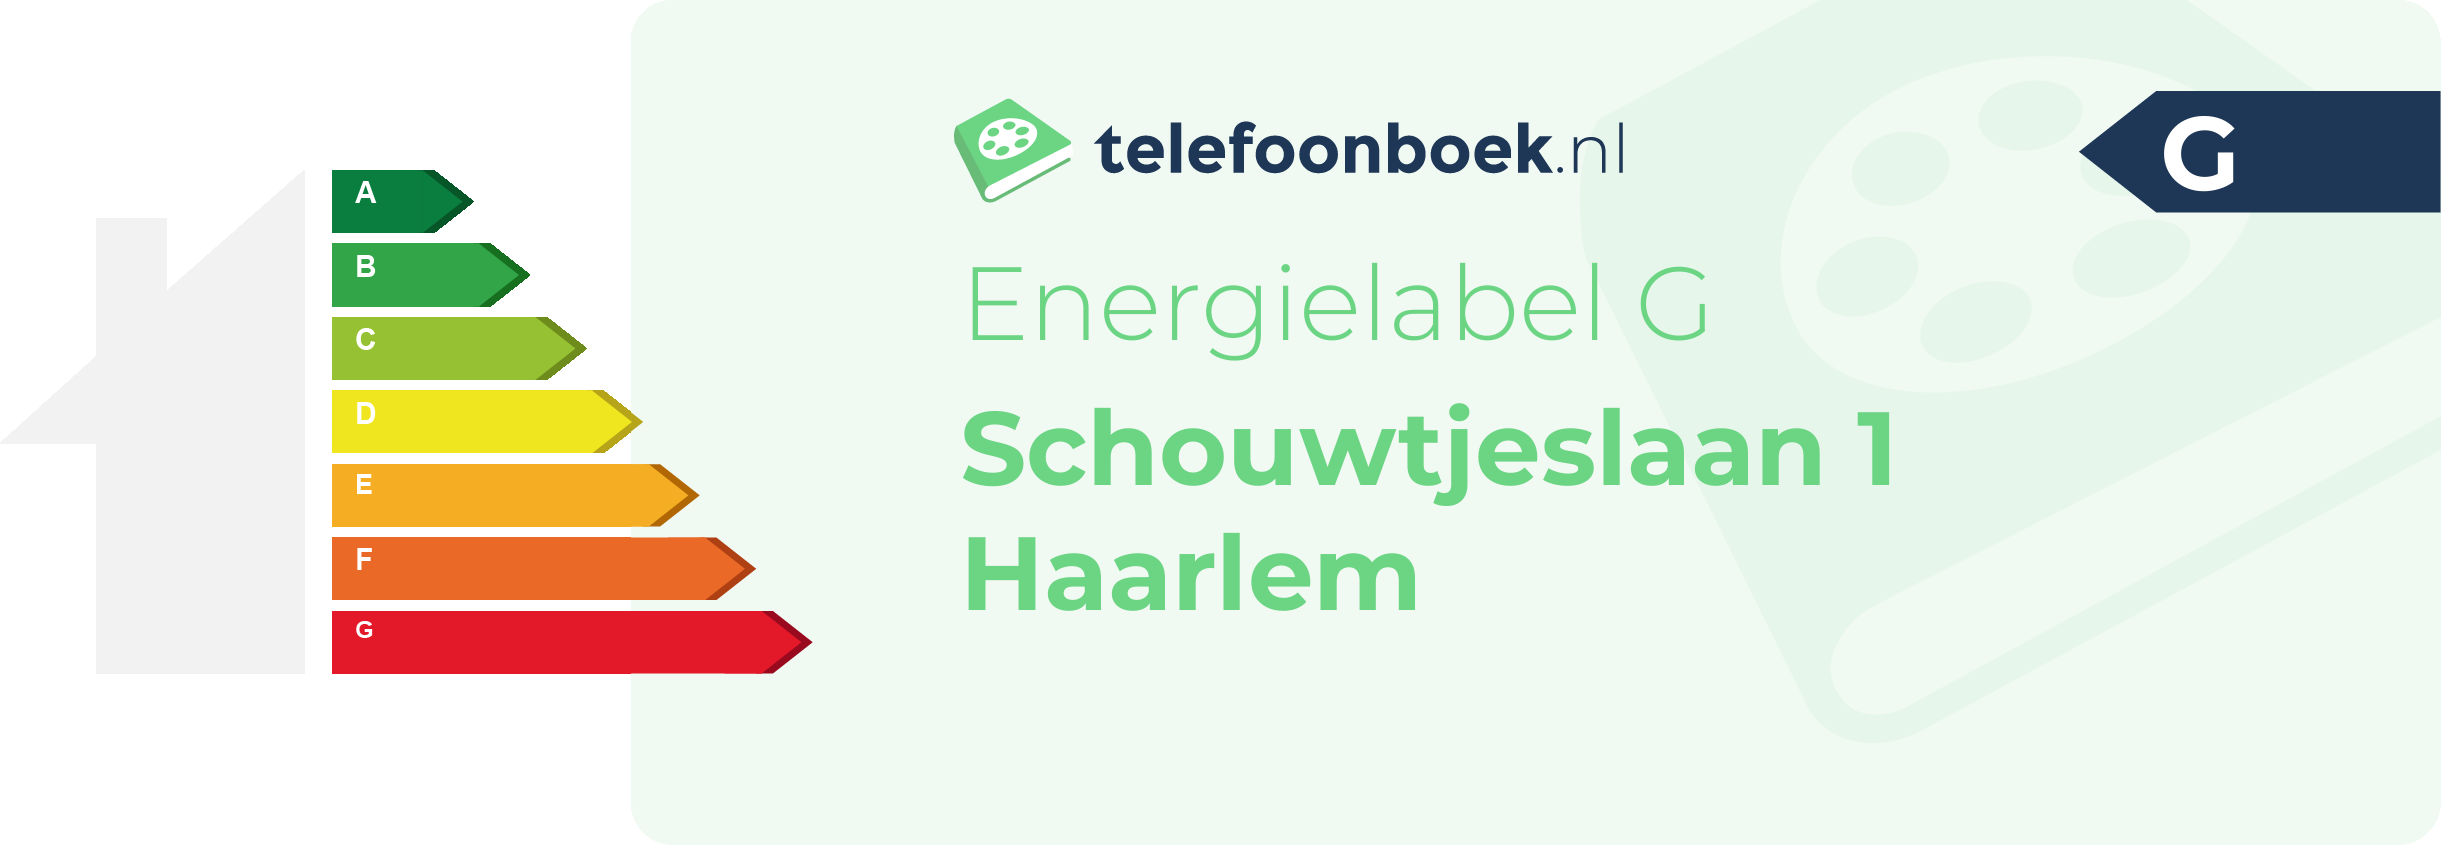 Energielabel Schouwtjeslaan 1 Haarlem